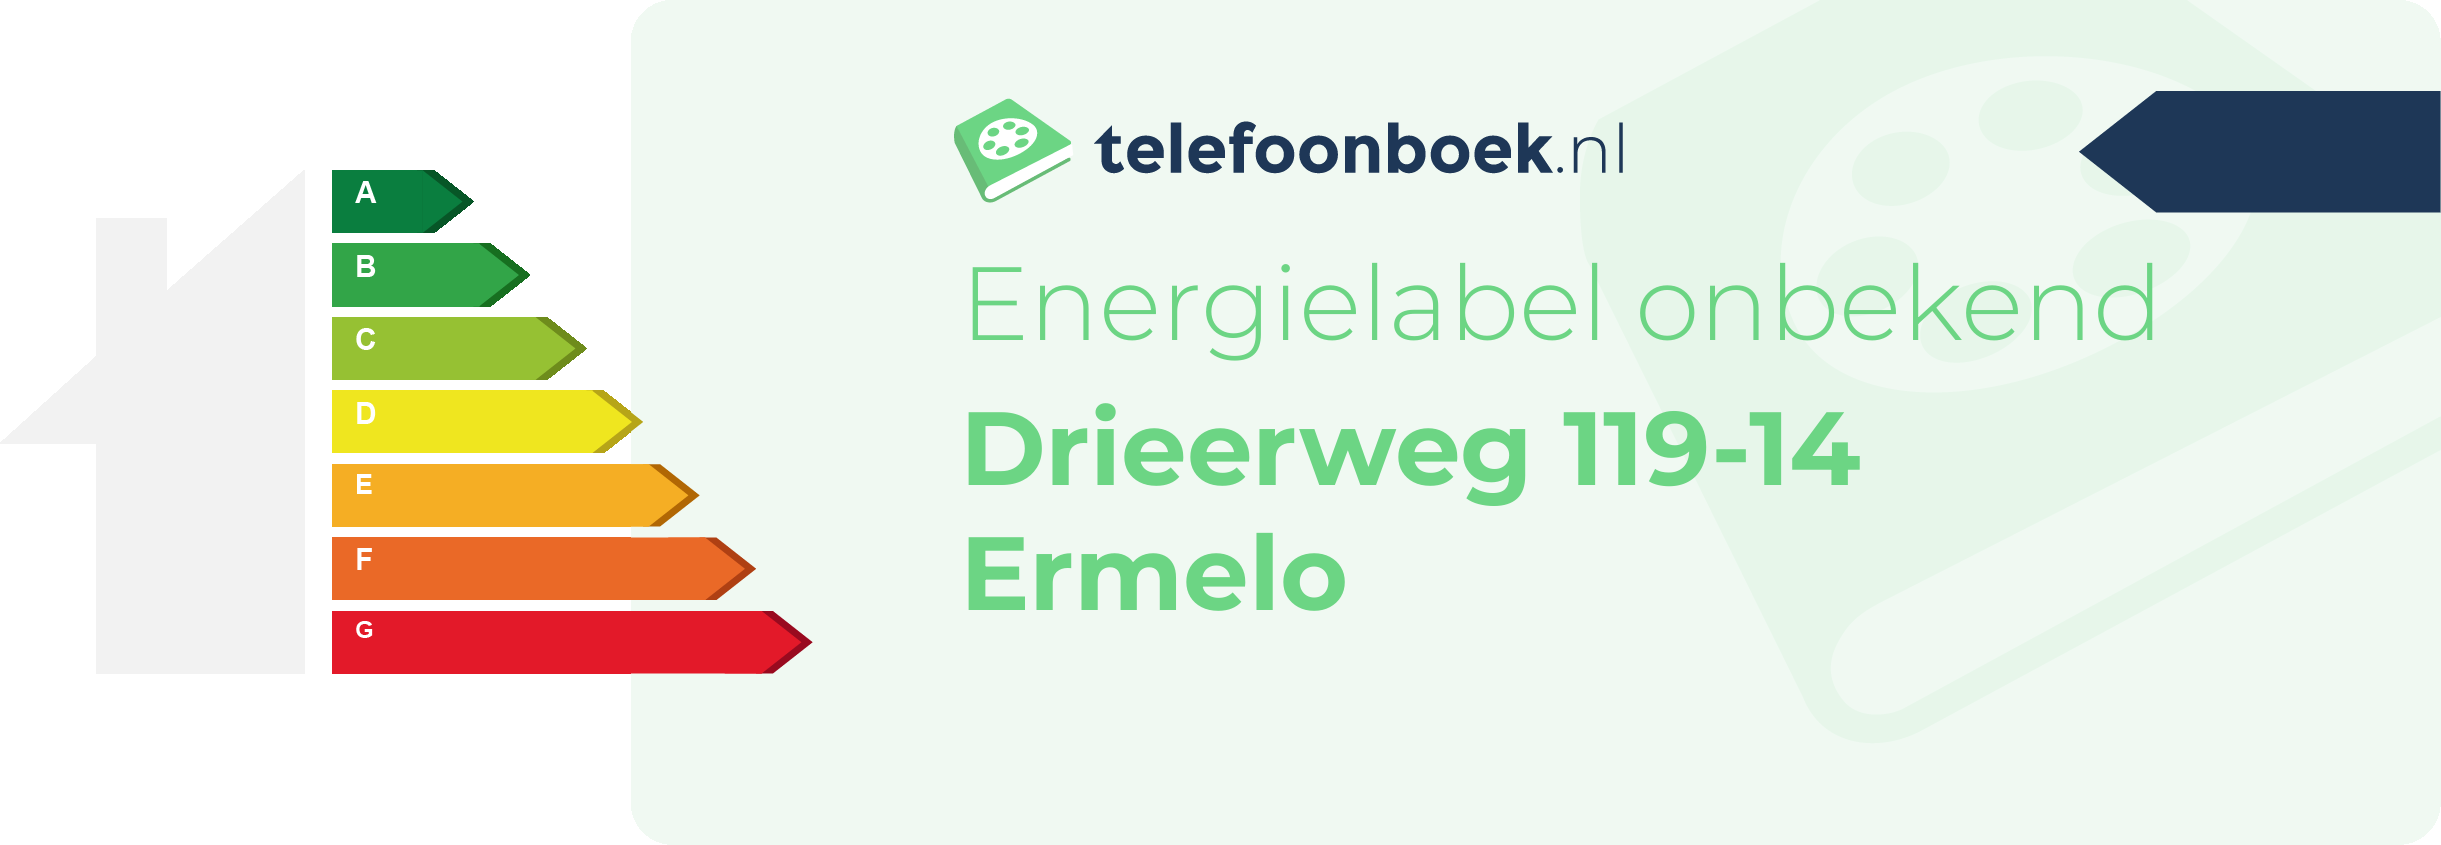 Energielabel Drieerweg 119-14 Ermelo